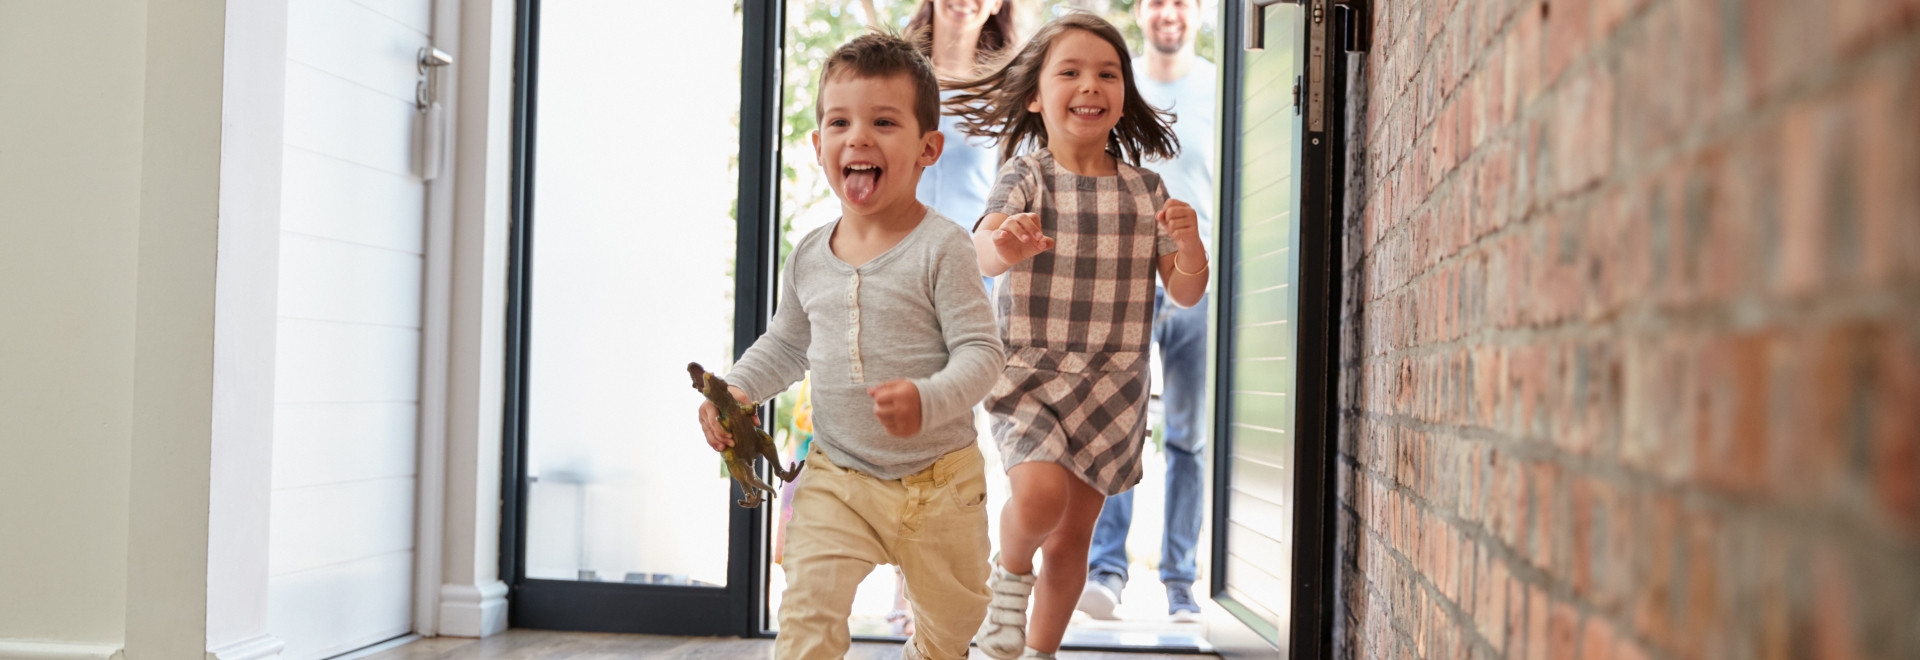 Children Running Through Front Door on Hard Wood Floors of Home